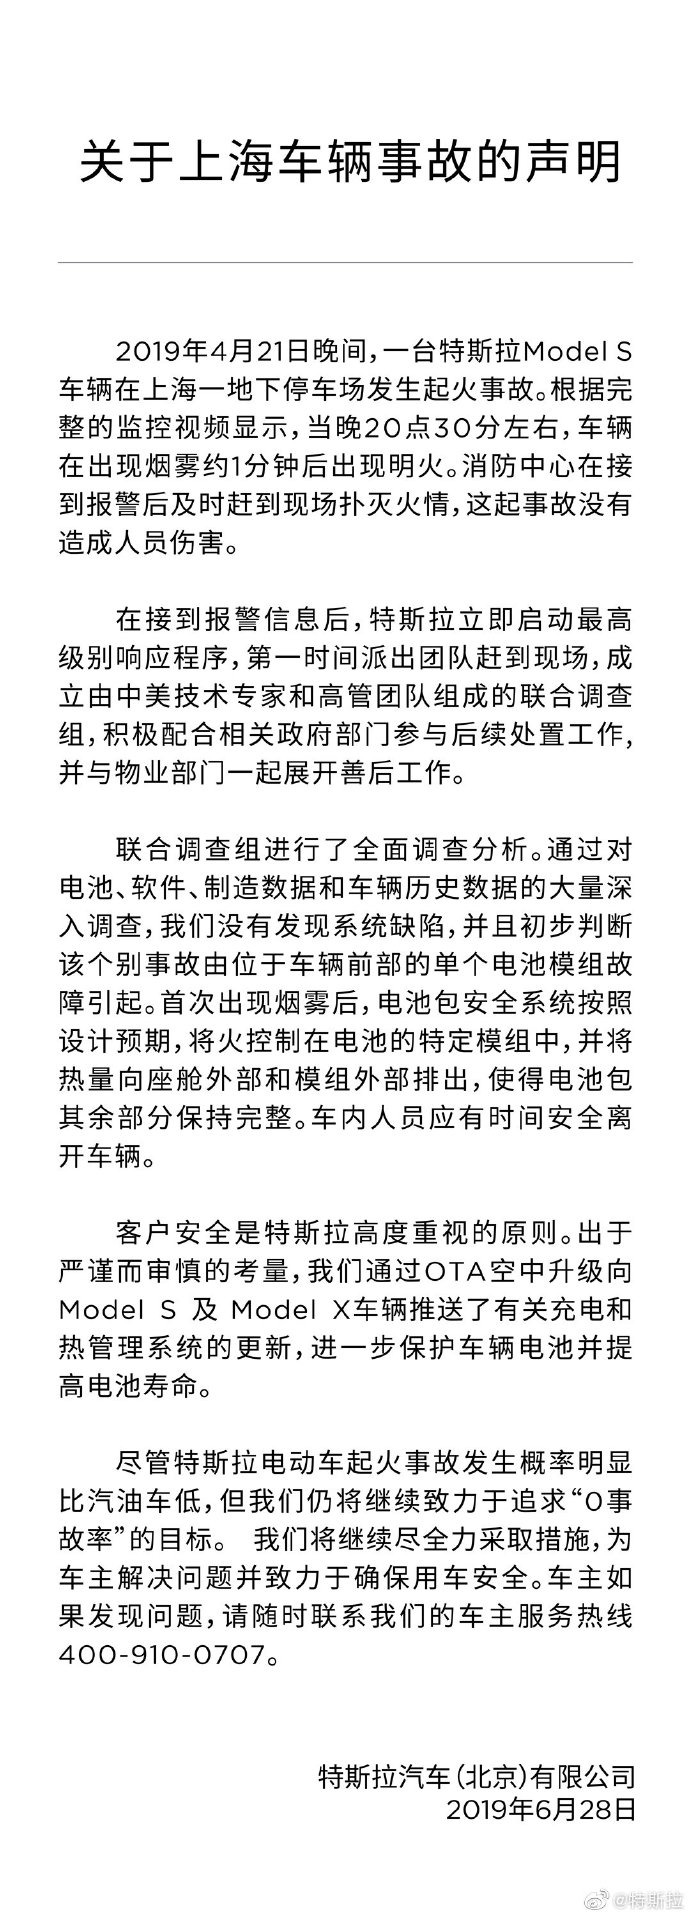 特斯拉公布 Model S 上海自燃事件調查結果 ：是故障但燒的「按照預期」 - 電腦王阿達